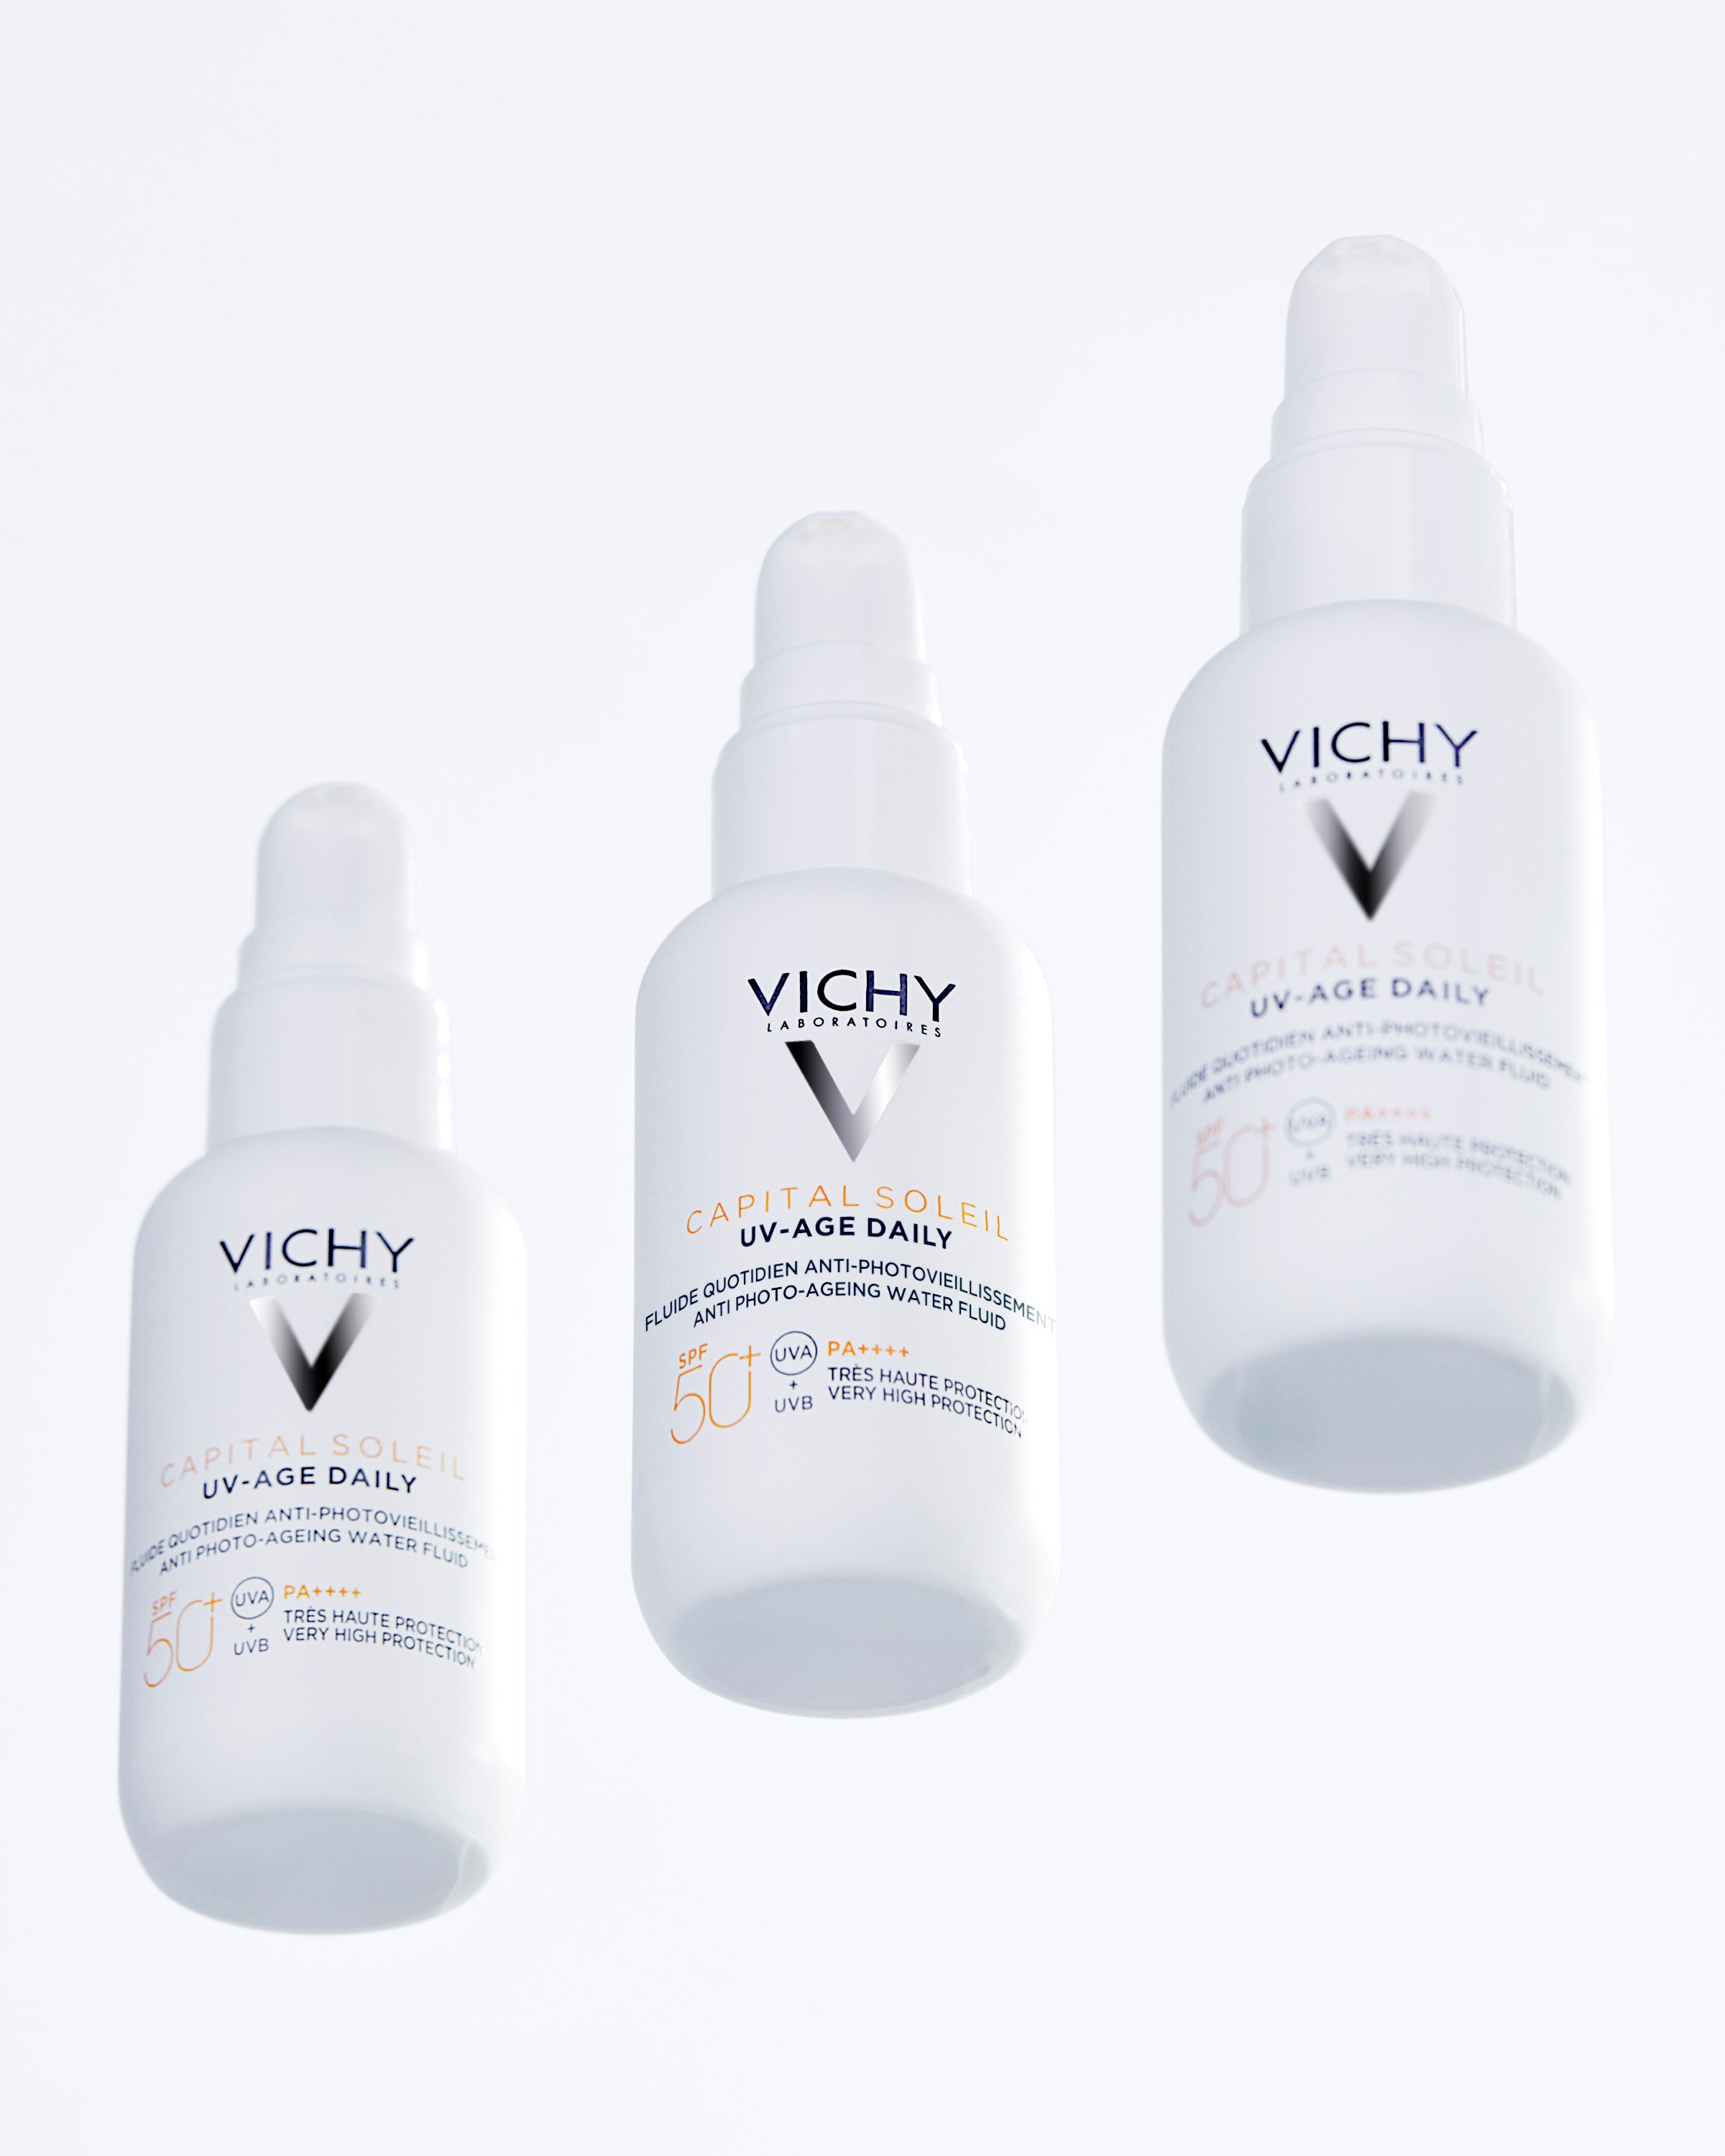 Сонцезахисний невагомий флюїд Vichy Capital Soleil UV-Age Daily проти ознак фотостаріння шкіри обличчя, SPF 50+, 40 мл (MB364200) - фото 3